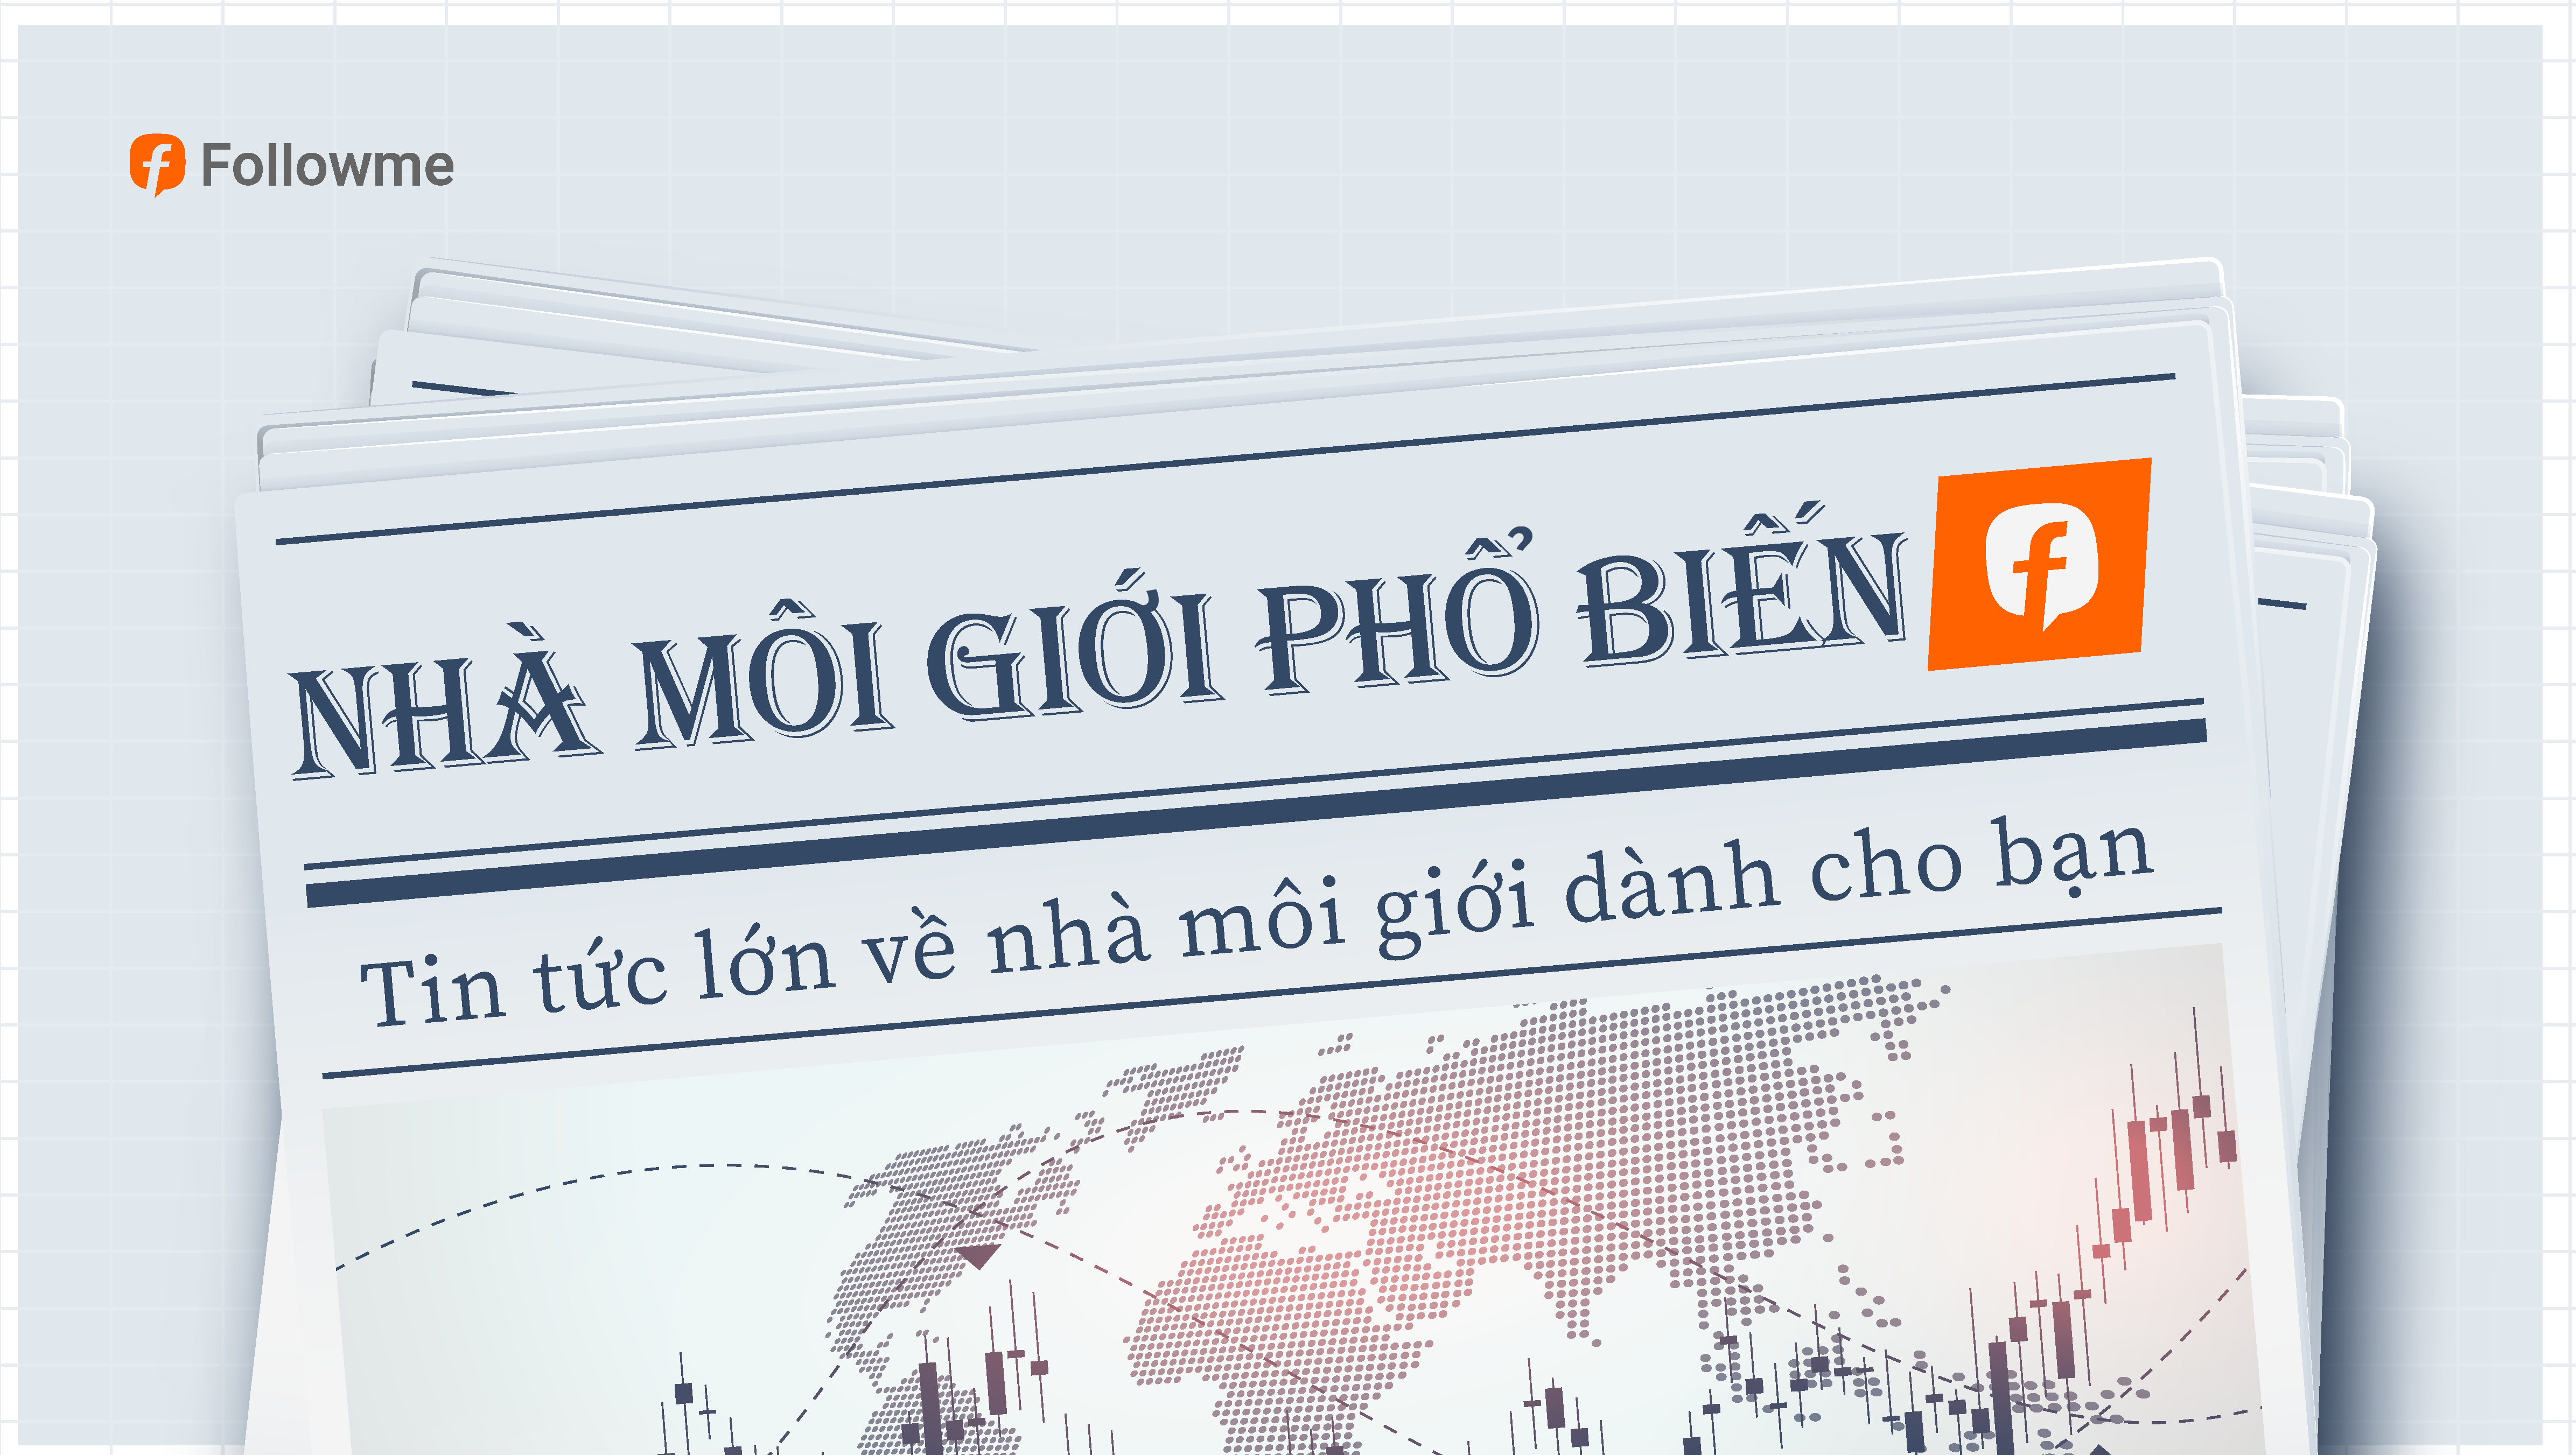 Tin Tức Nhà Môi Giới | eToro hợp tác với OpenPayd để giới thiệu Đề xuất tài chính nhúng ở Châu Âu